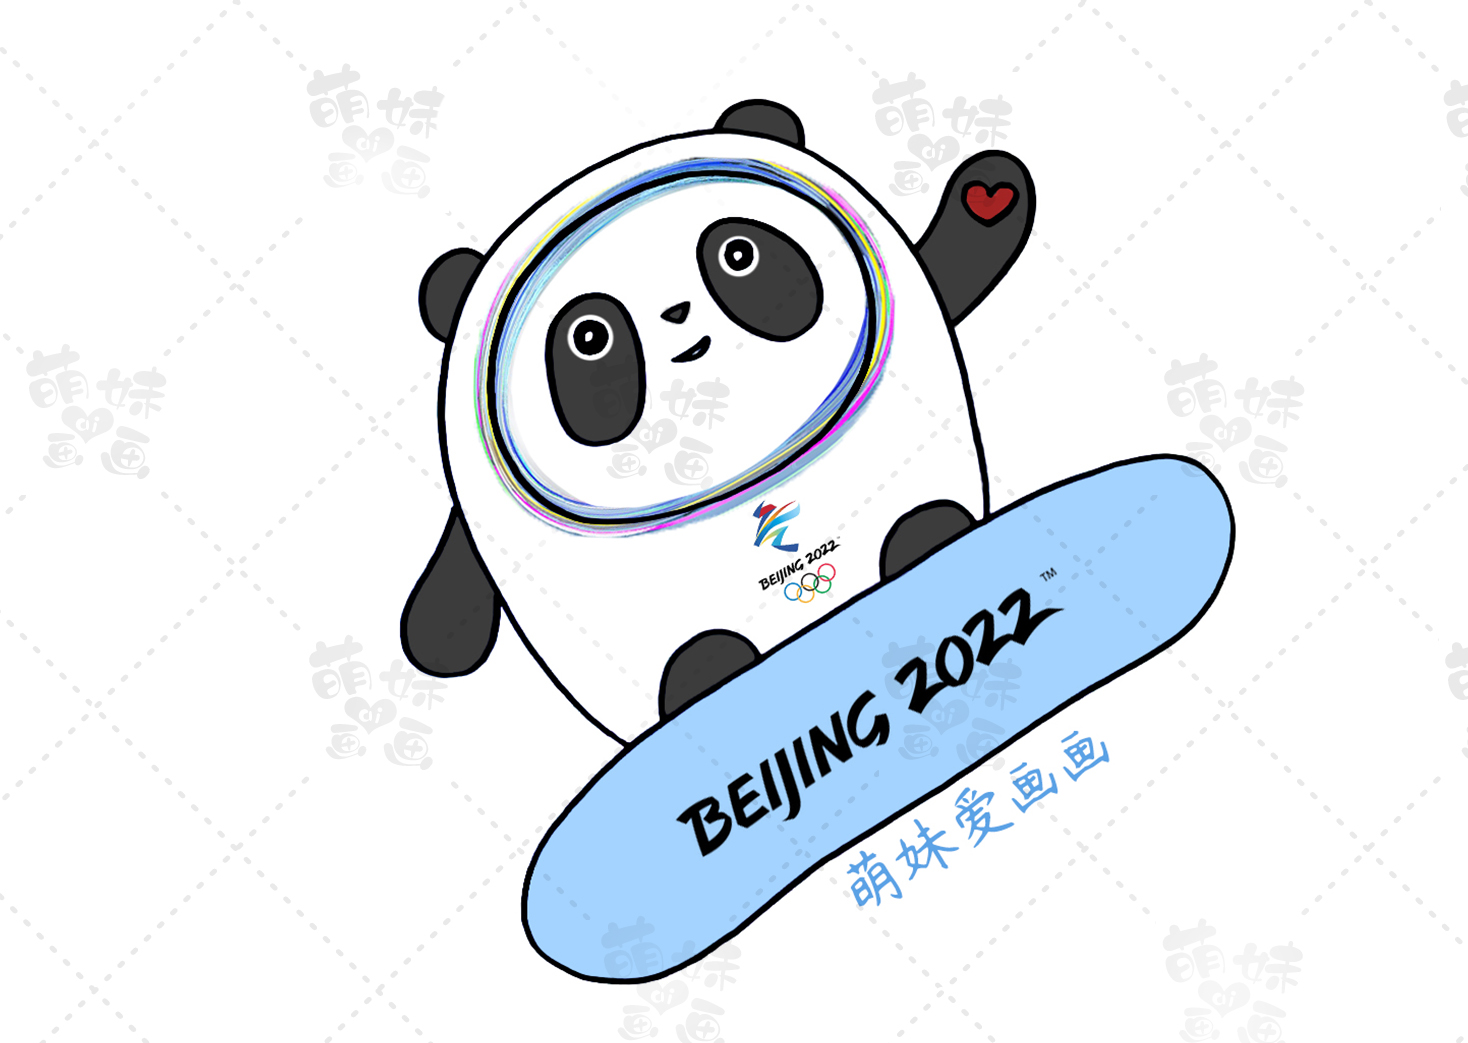 简单漂亮的2022北京冬奥会手抄报及简笔画合集，含文字内容